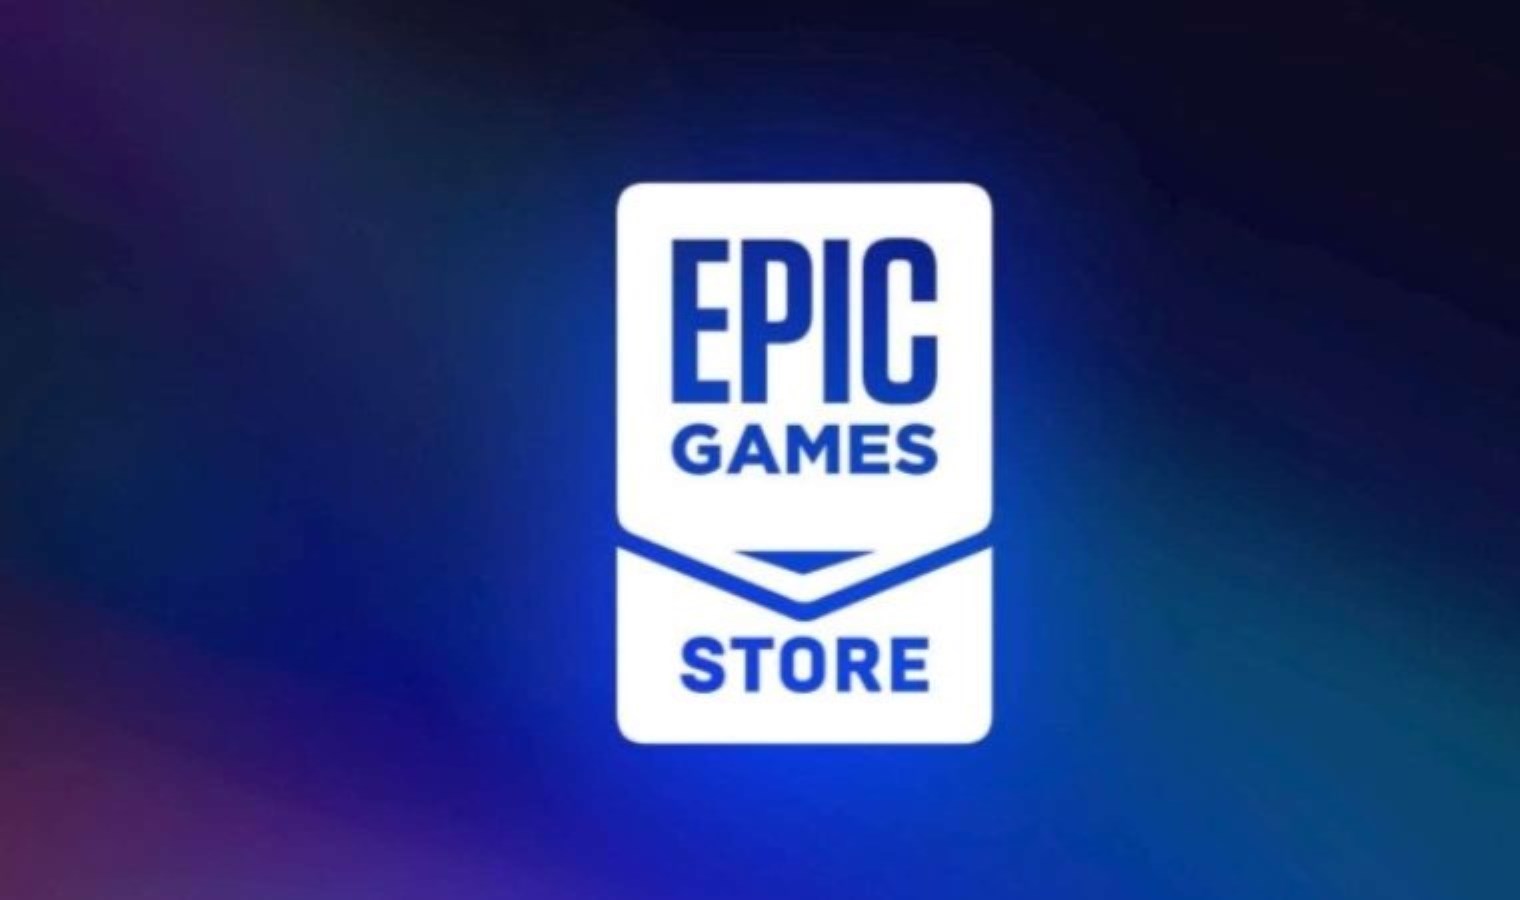 Epic Games 本周免费游戏已公布 - Last Minute 科技新闻